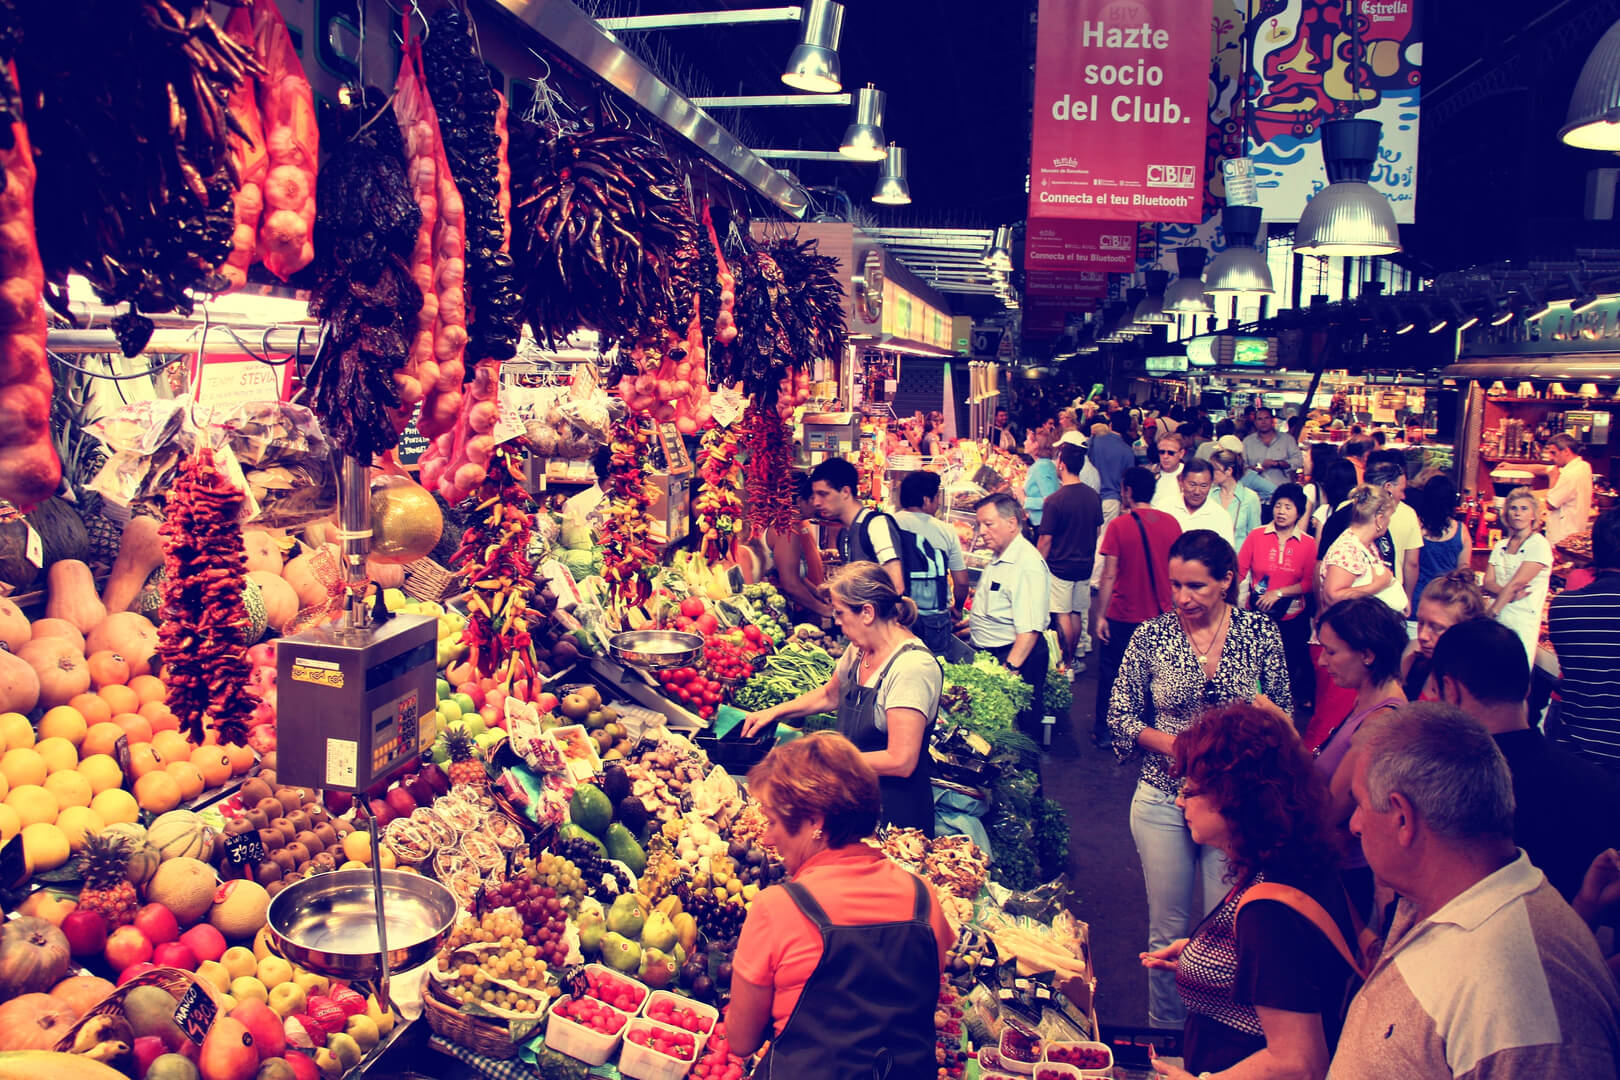 Des touristes visitent le célèbre marché de La Boqueria à Barcelone. C'est l'un des plus anciens marchés d'Europe qui existe encore.